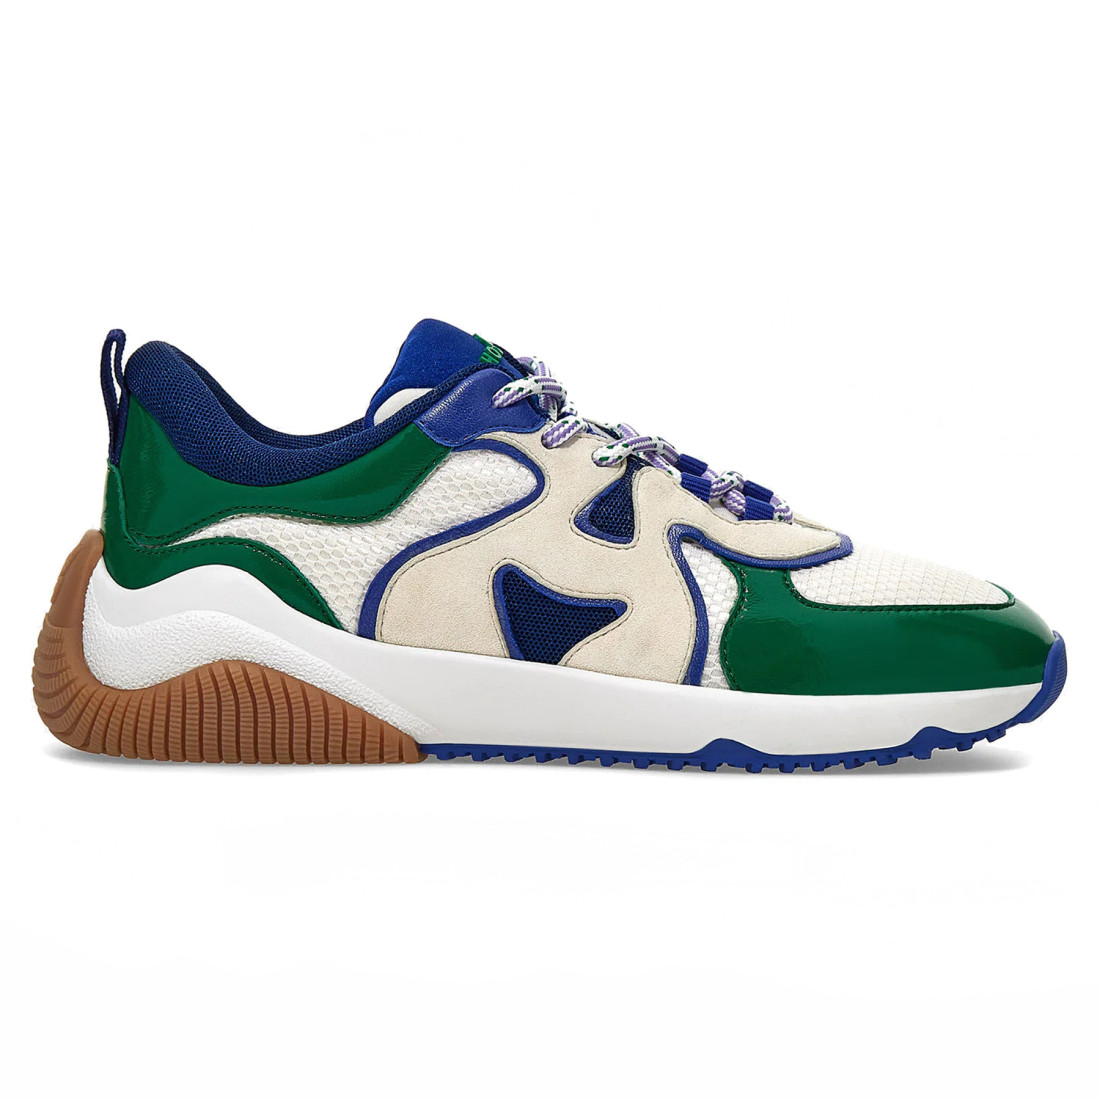 Sneaker da donna Hogan H597 verde blu e bianca